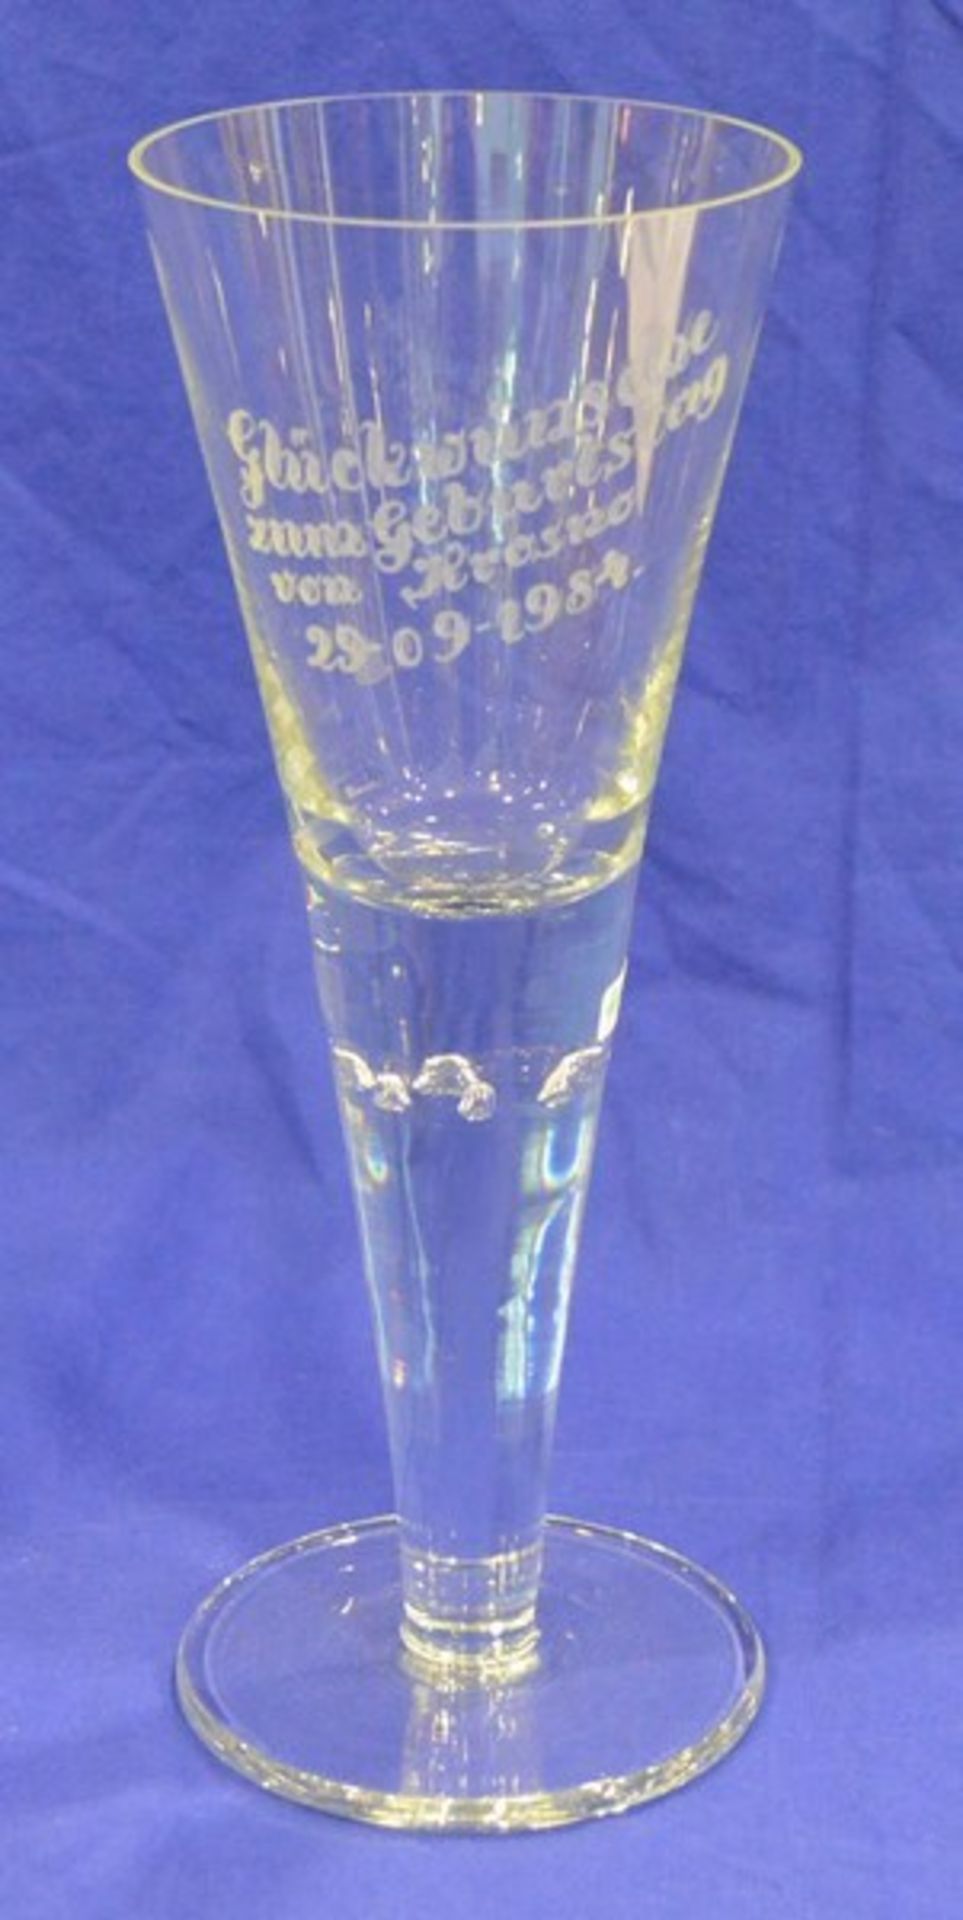 Zierglas farbl. Glas, runder Fuß, Kelch mit Spruch "Glückwünsche zum Geburtstag", H 28 cm